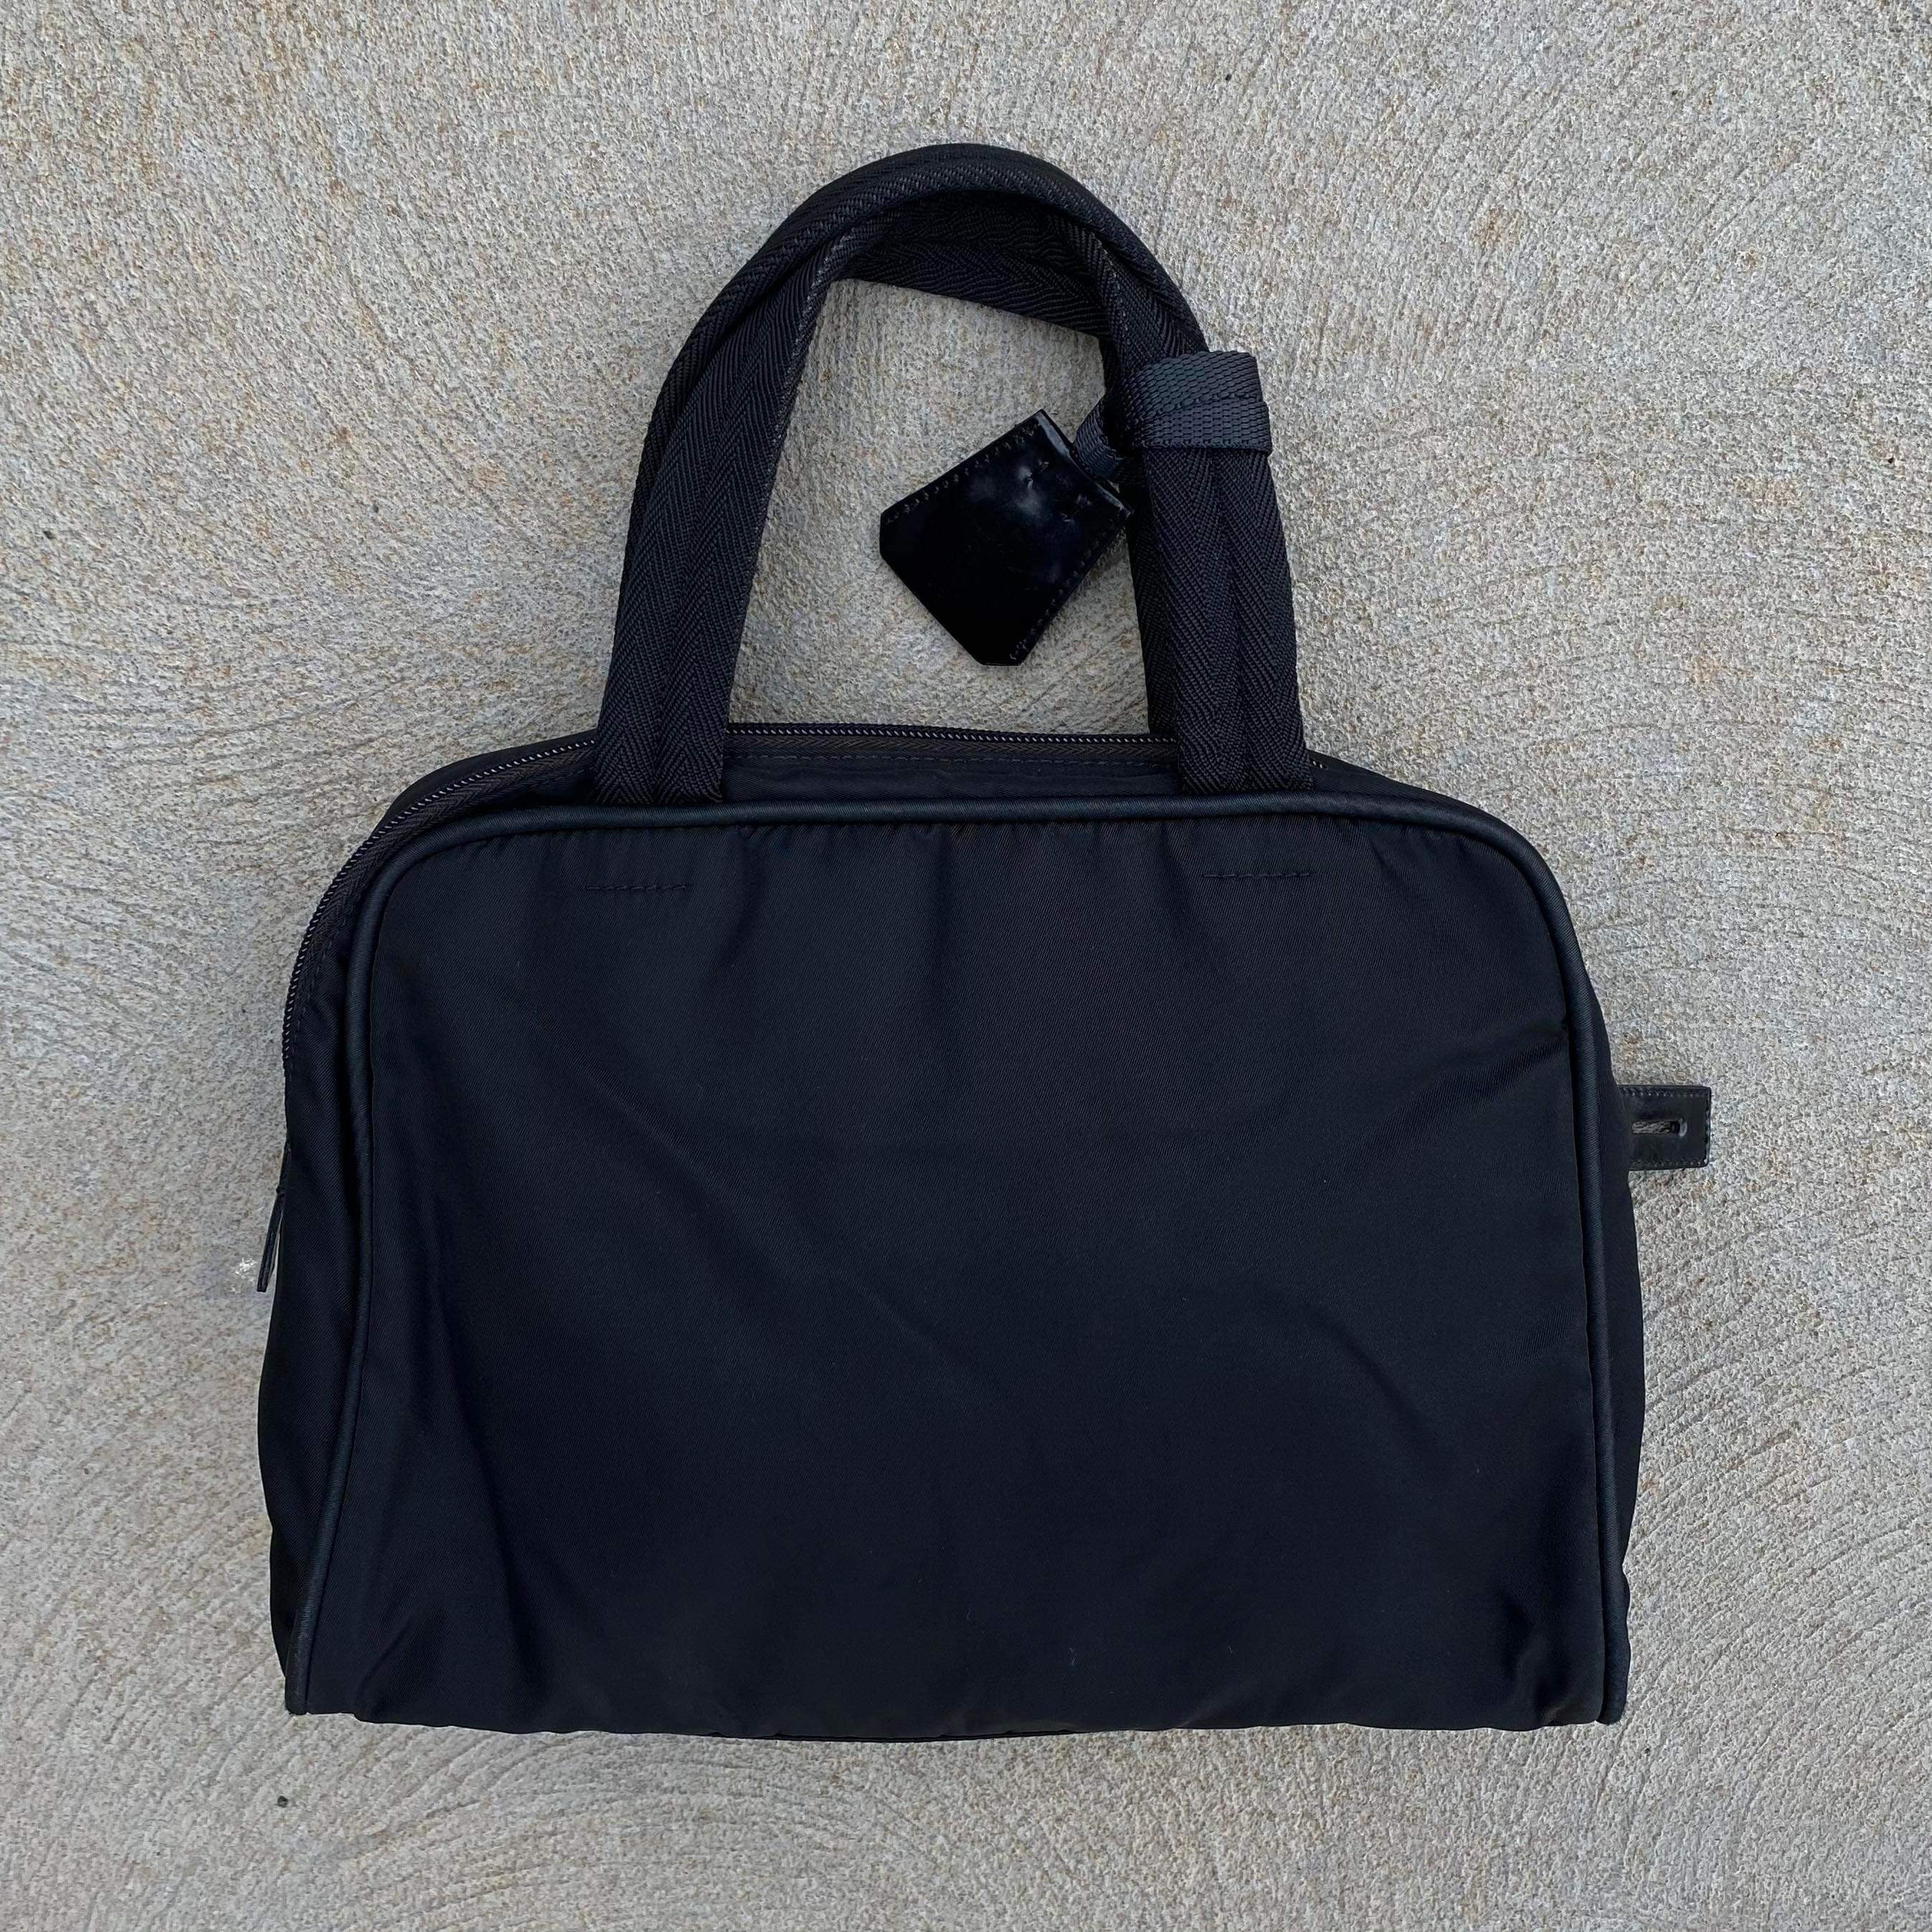 Prada Black Nylon Hand Bag